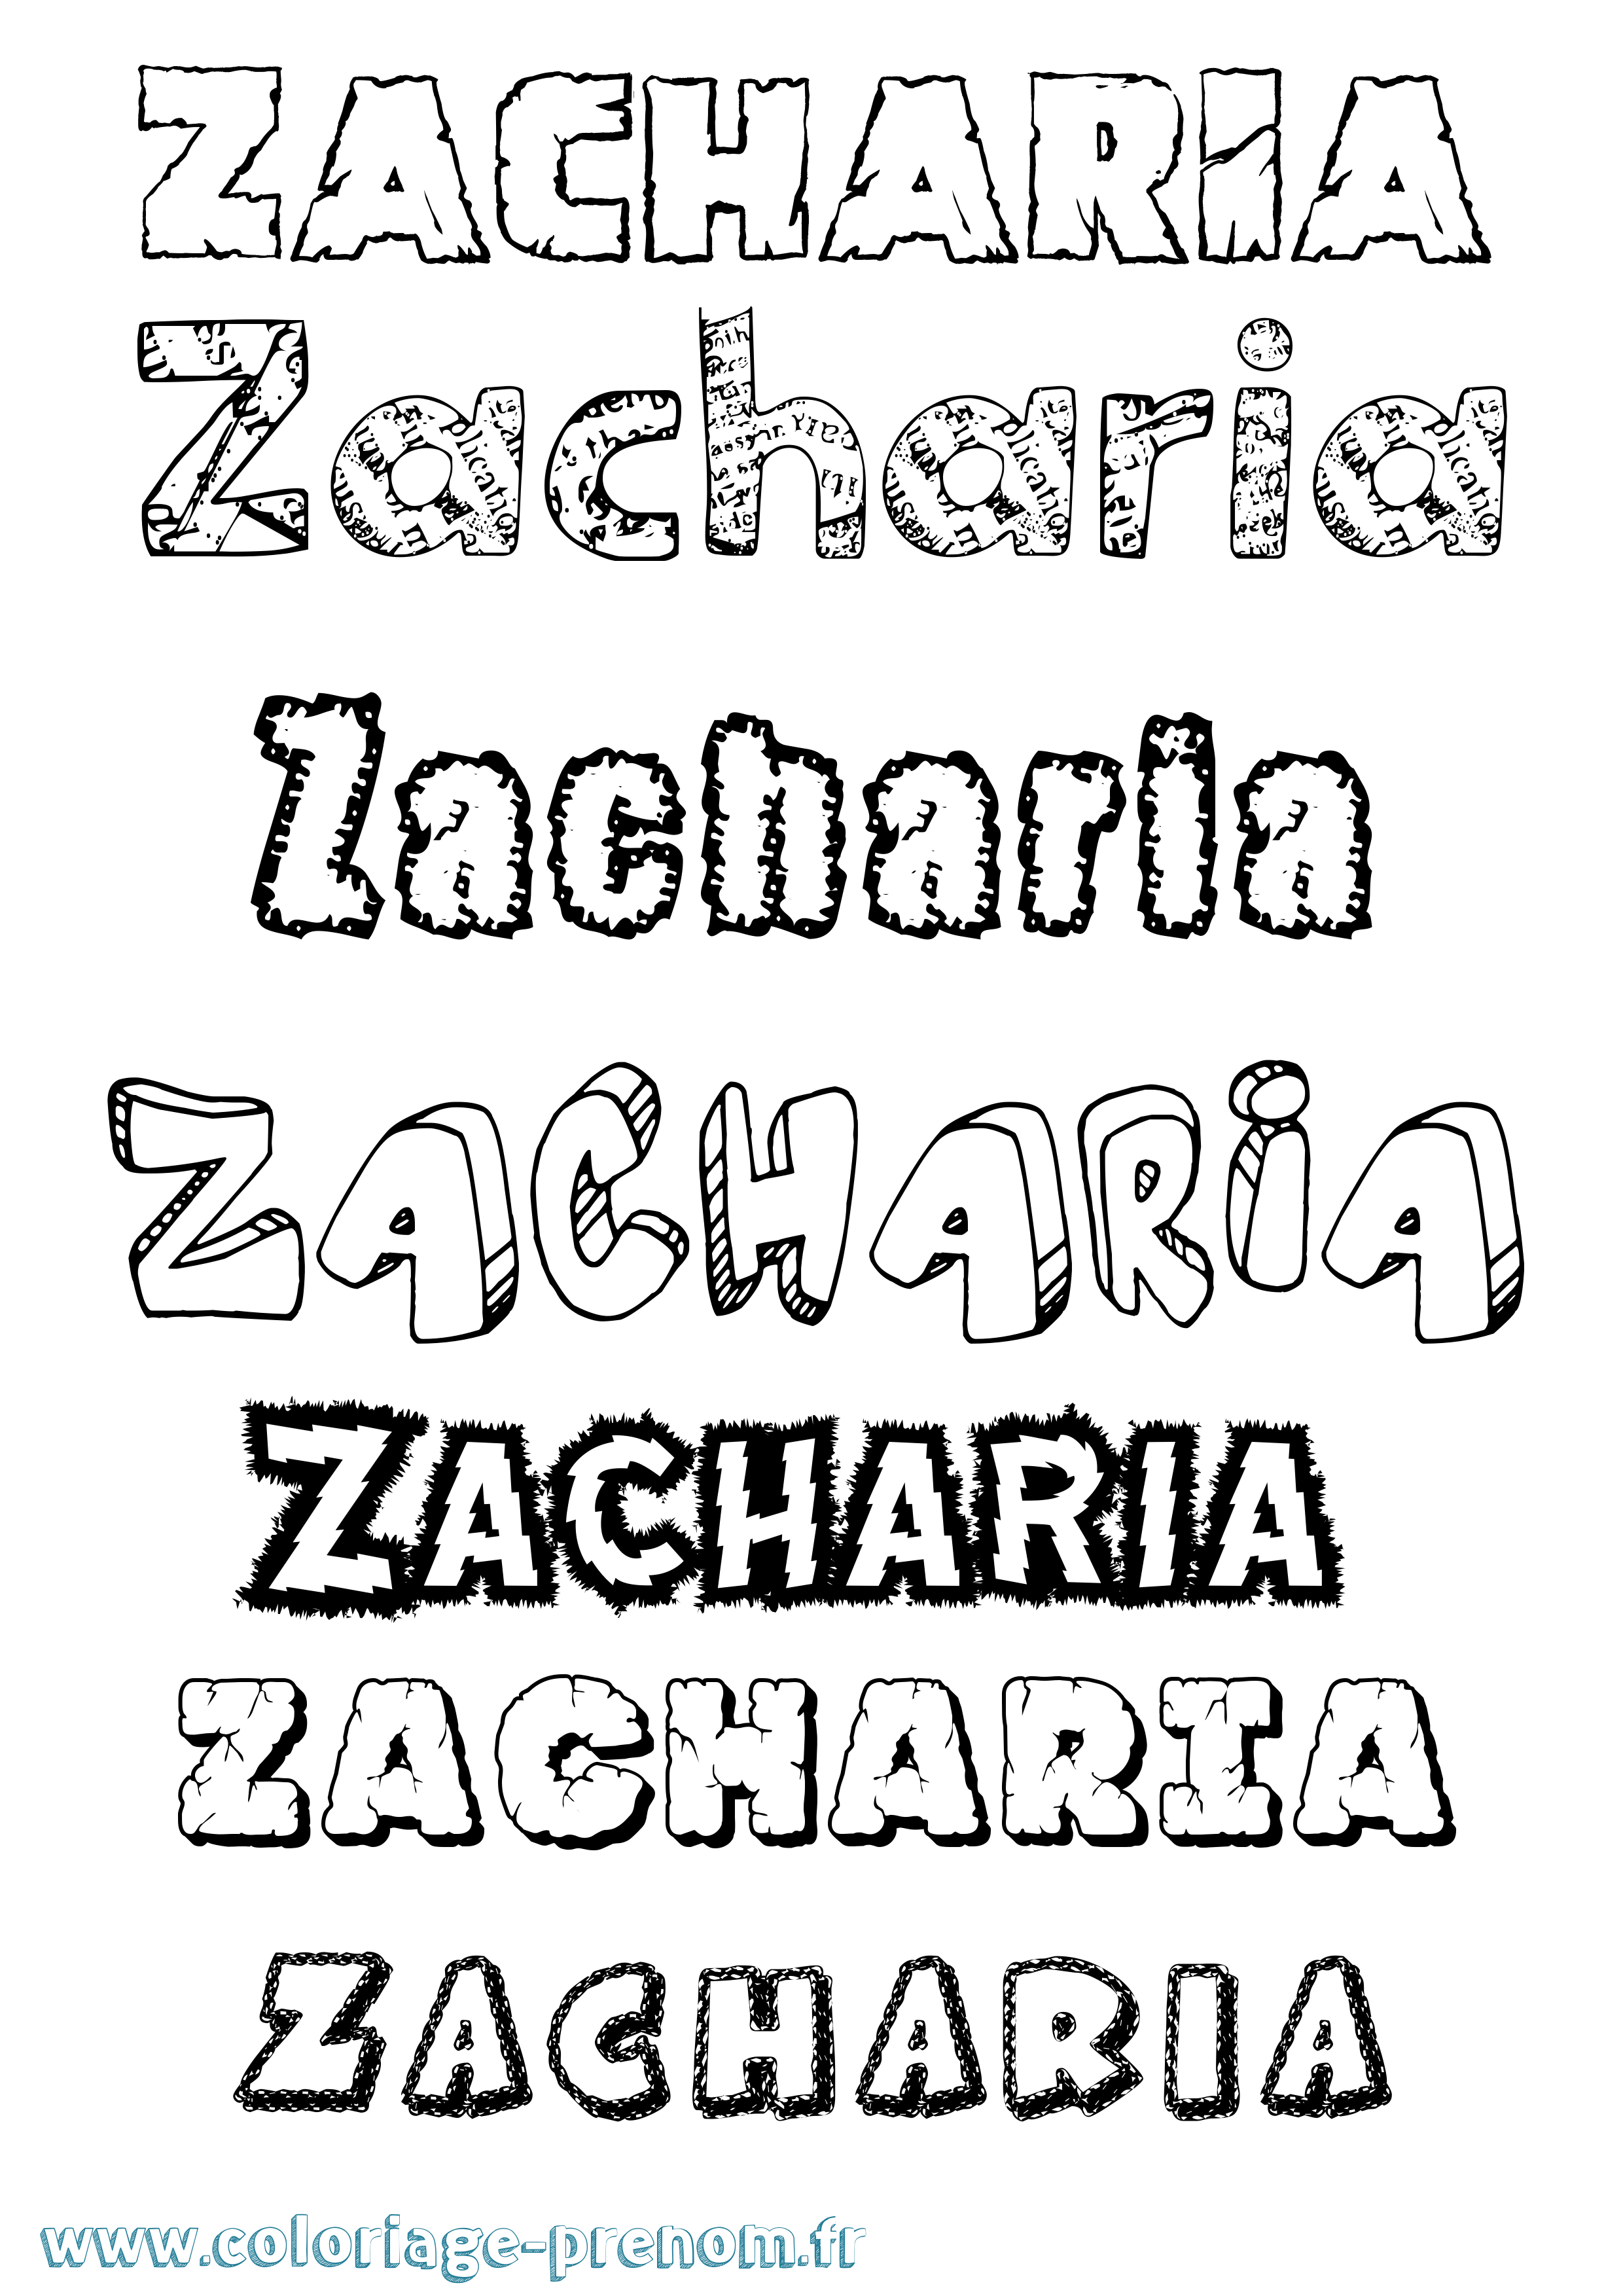 Coloriage du prénom Zacharia : à Imprimer ou Télécharger facilement